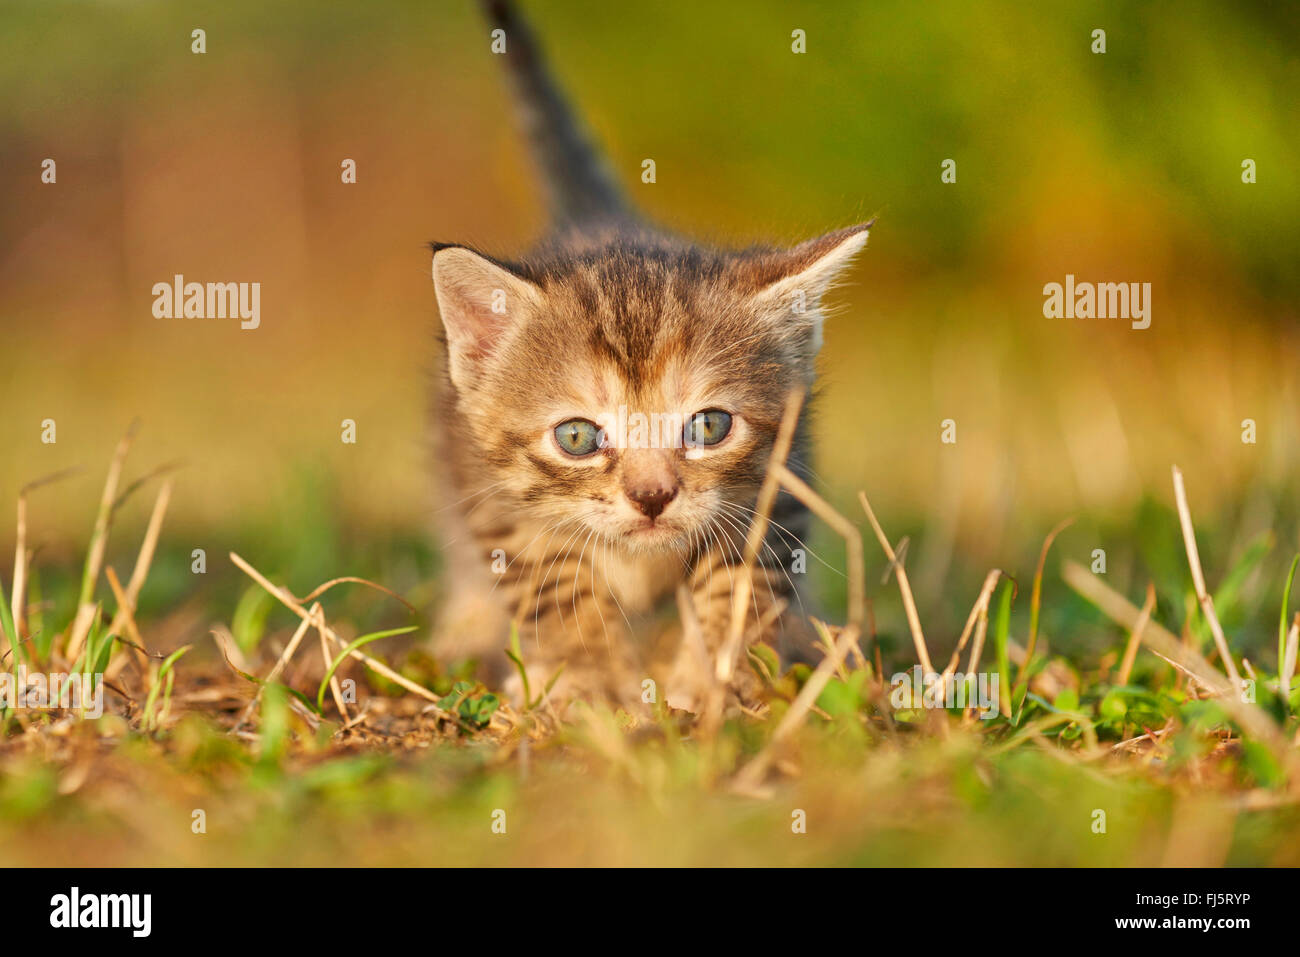 Chat domestique, le chat domestique (Felis silvestris catus), f. cinq semaines chaton dans un pré, Allemagne Banque D'Images